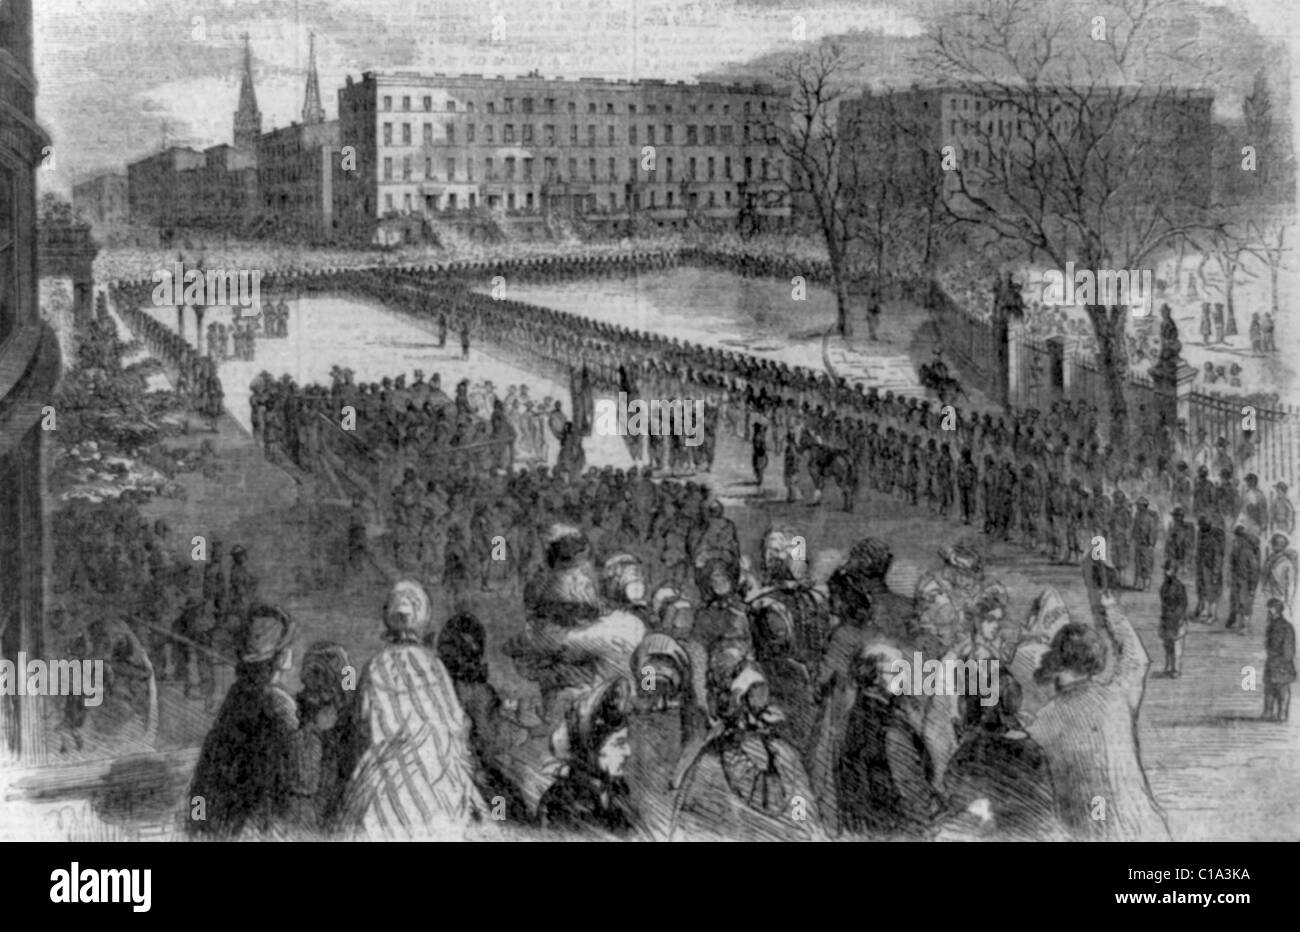 20. USA farbige Truppen erhalten ihre Farben am Union Square, 5. März 1864 Stockfoto